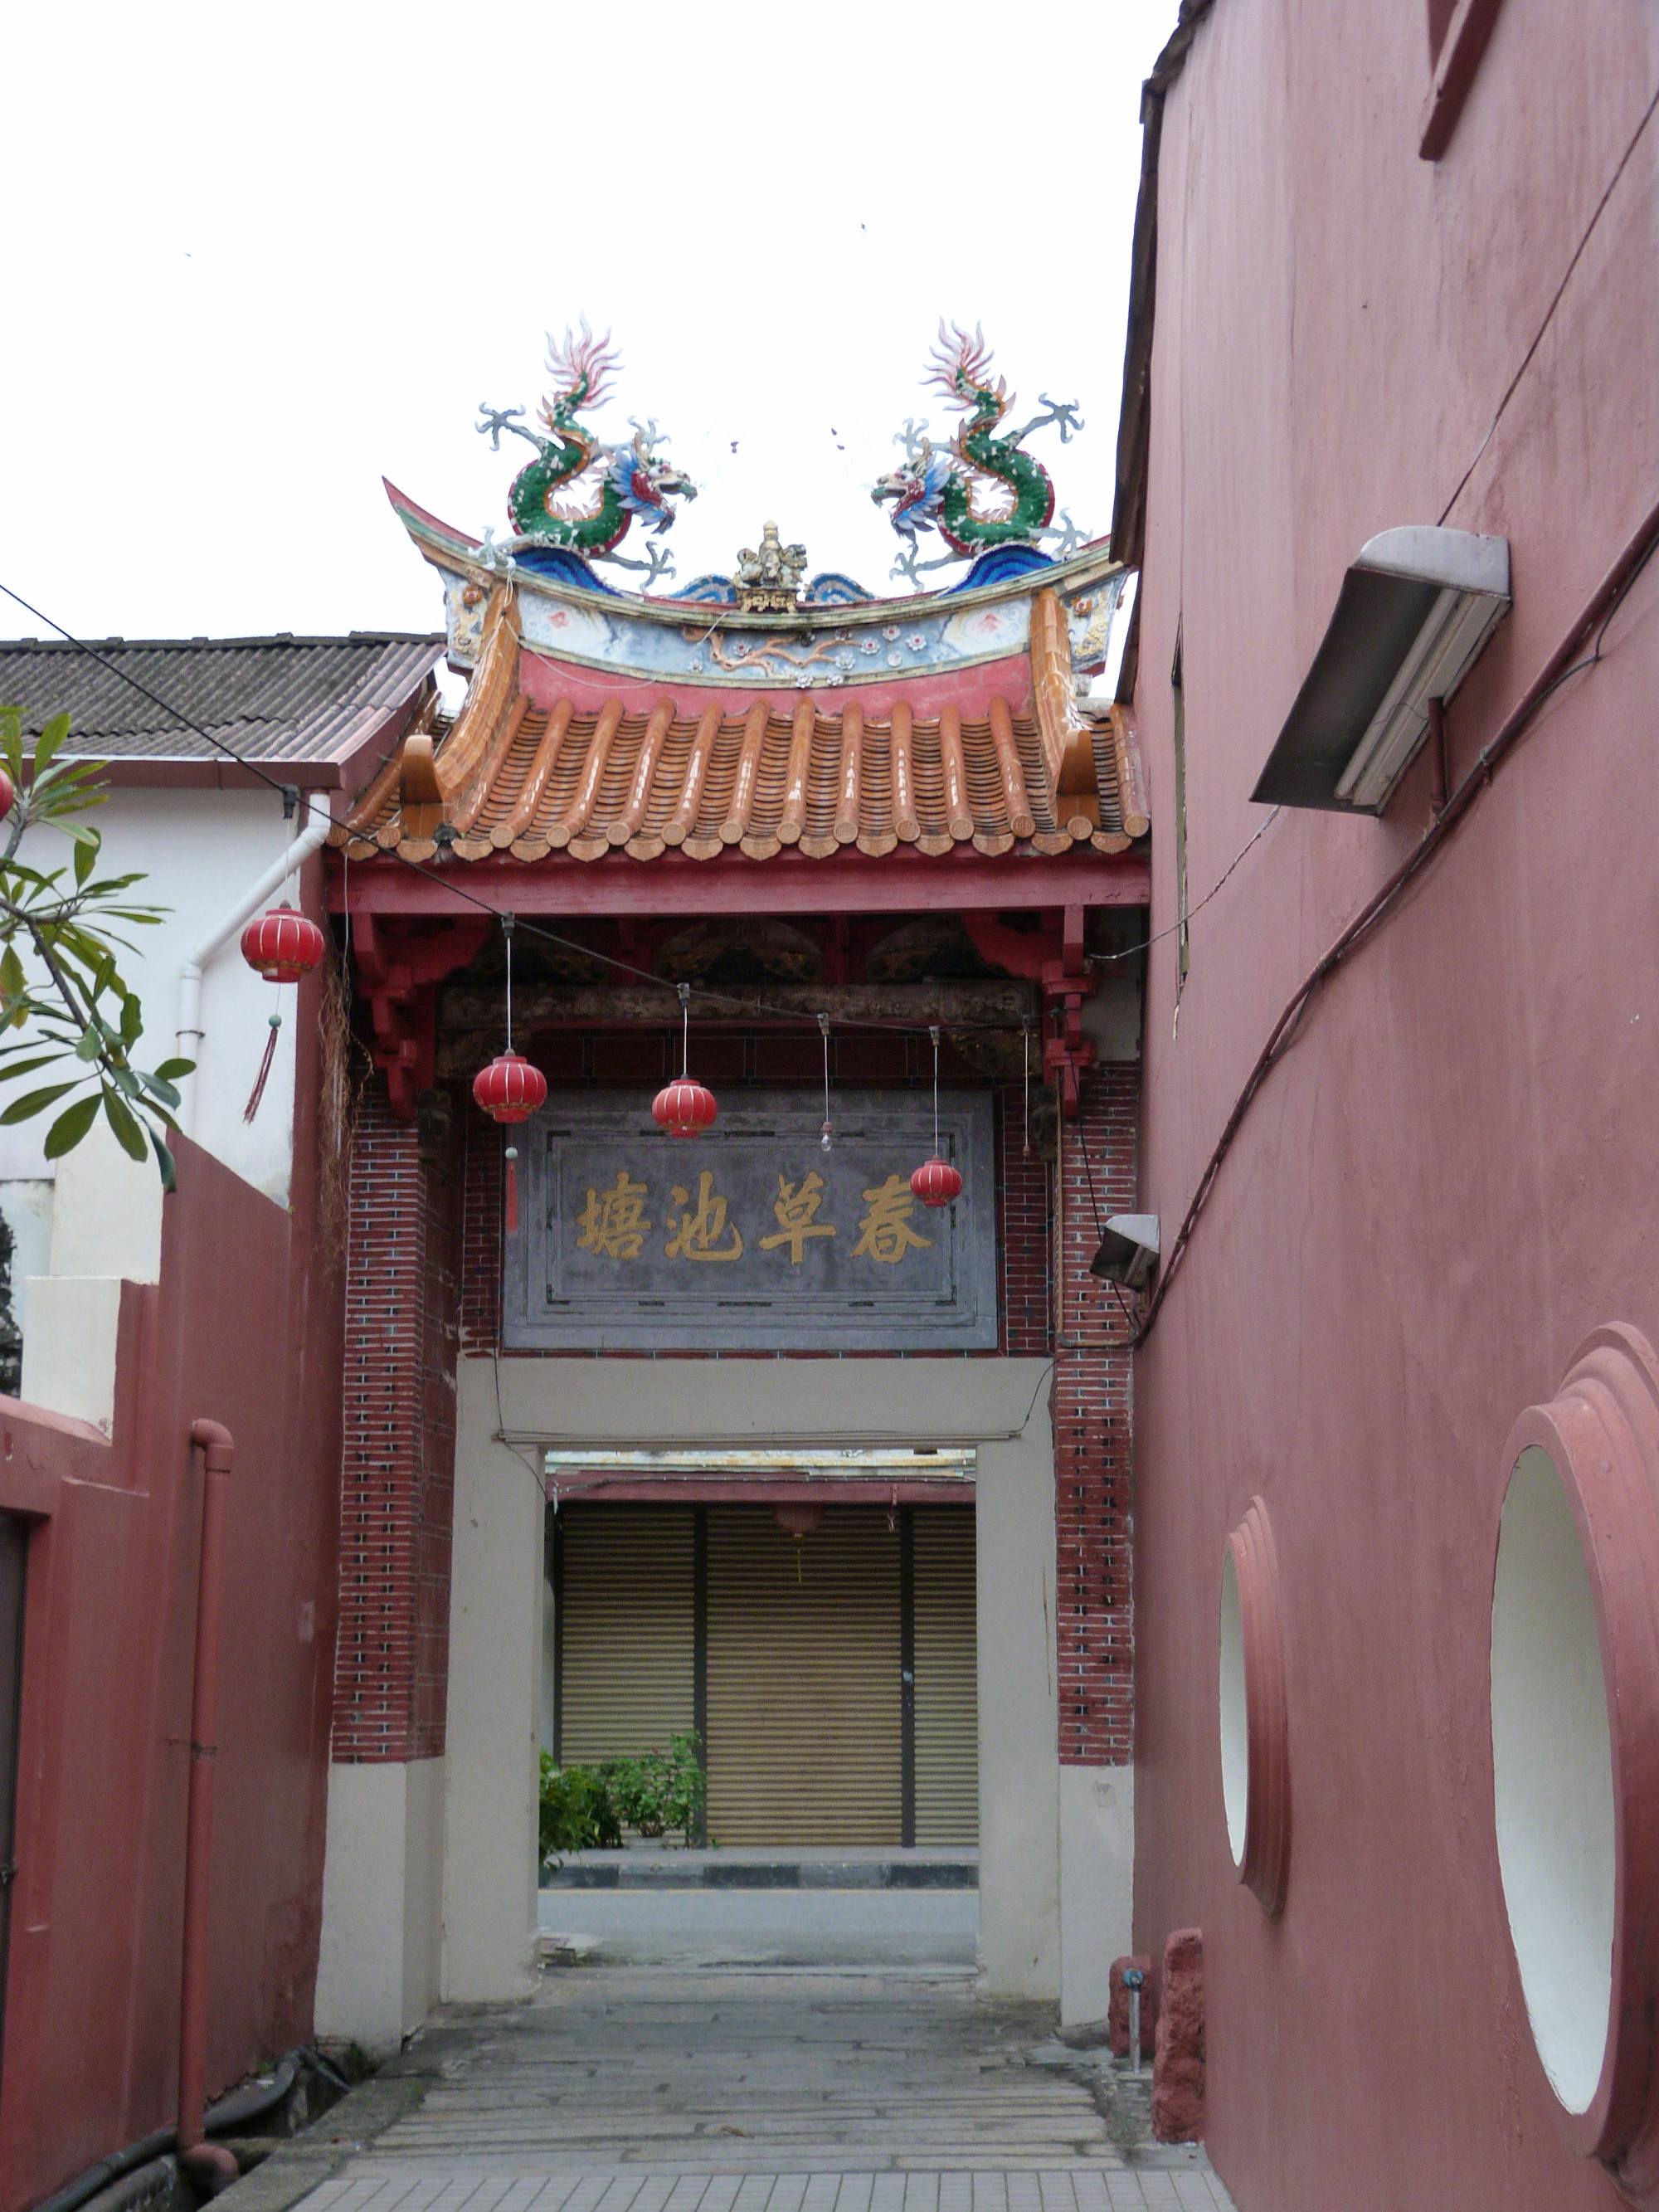 Cheah Kongsi Temple & Local History Museum